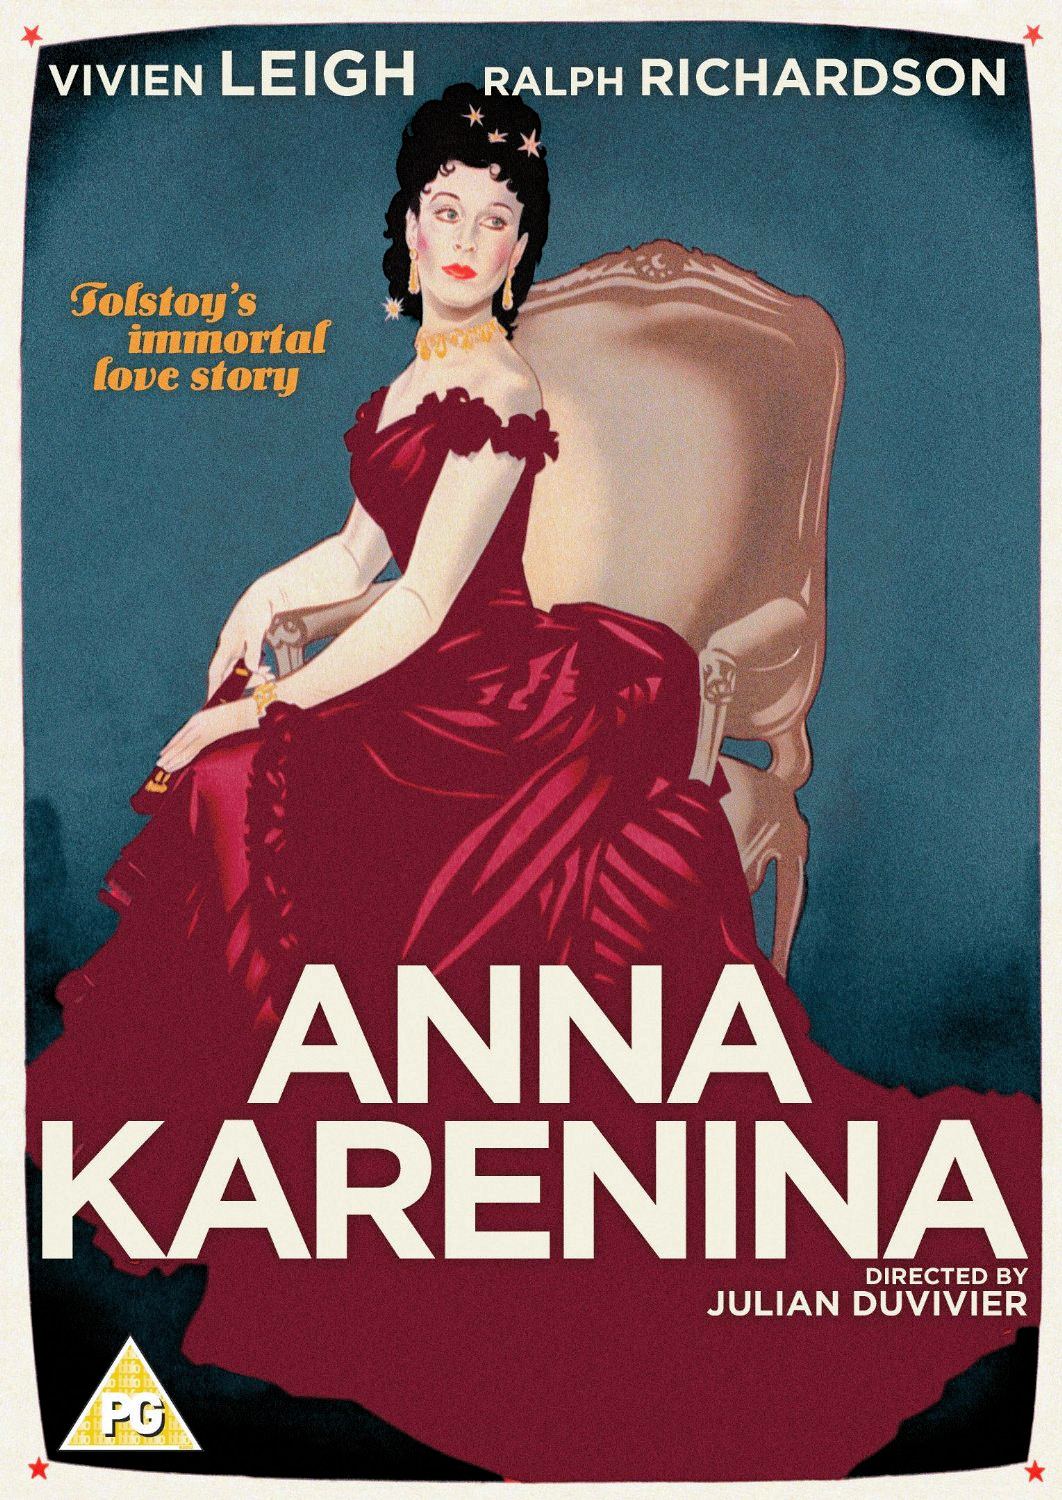 Anna Karenina DVD from Studio Canal.  Features Vivien Leigh as Anna Karenina